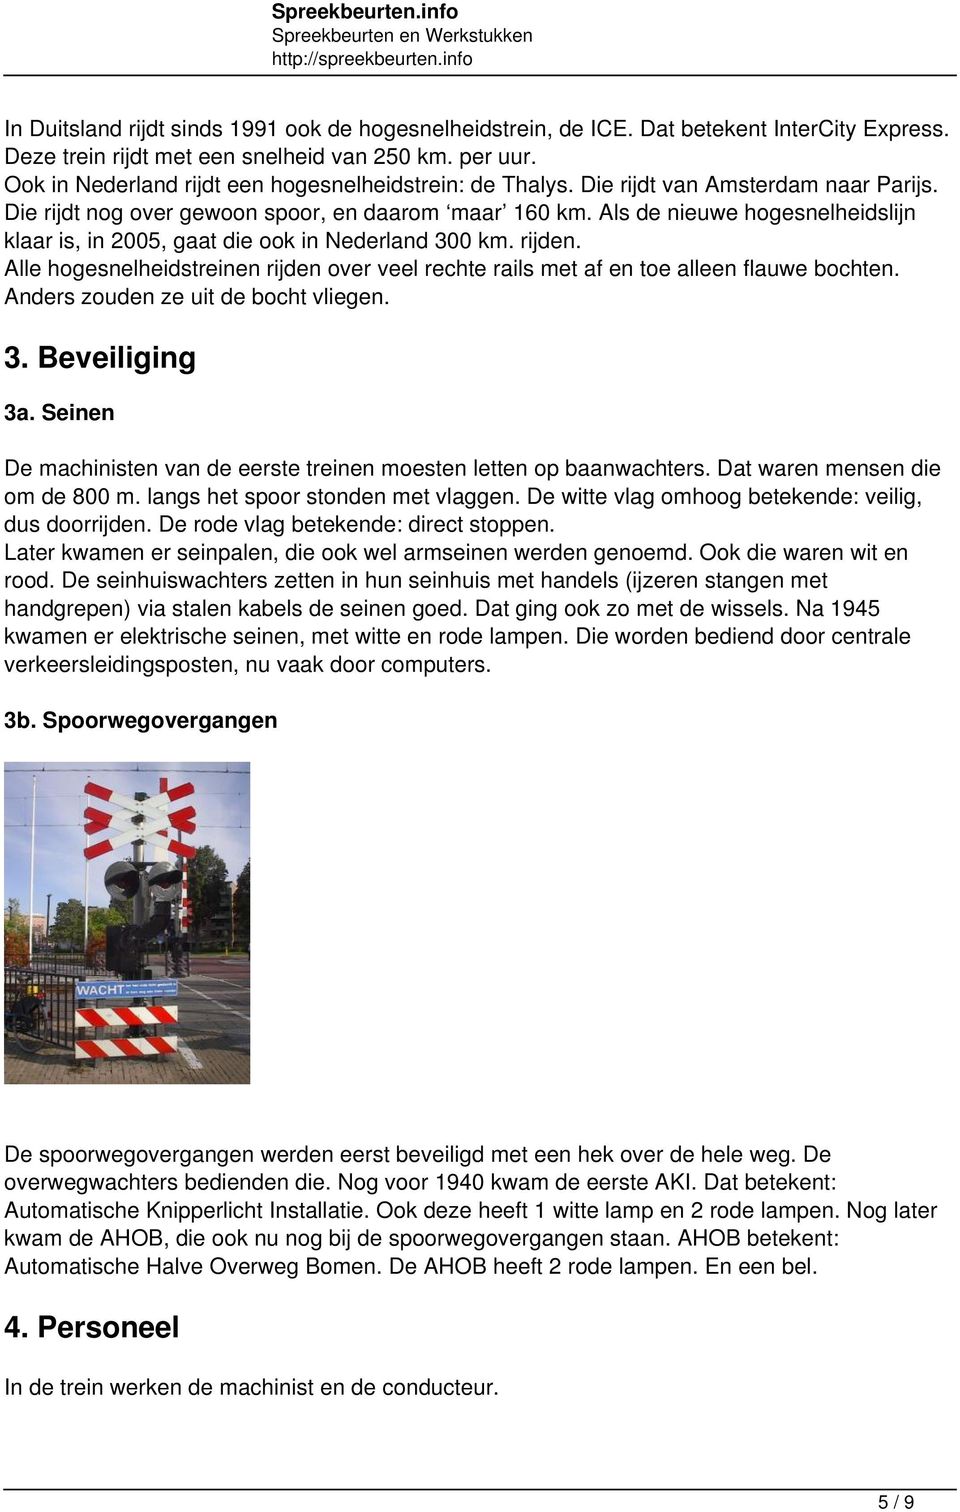 Als de nieuwe hogesnelheidslijn klaar is, in 2005, gaat die ook in Nederland 300 km. rijden. Alle hogesnelheidstreinen rijden over veel rechte rails met af en toe alleen flauwe bochten.